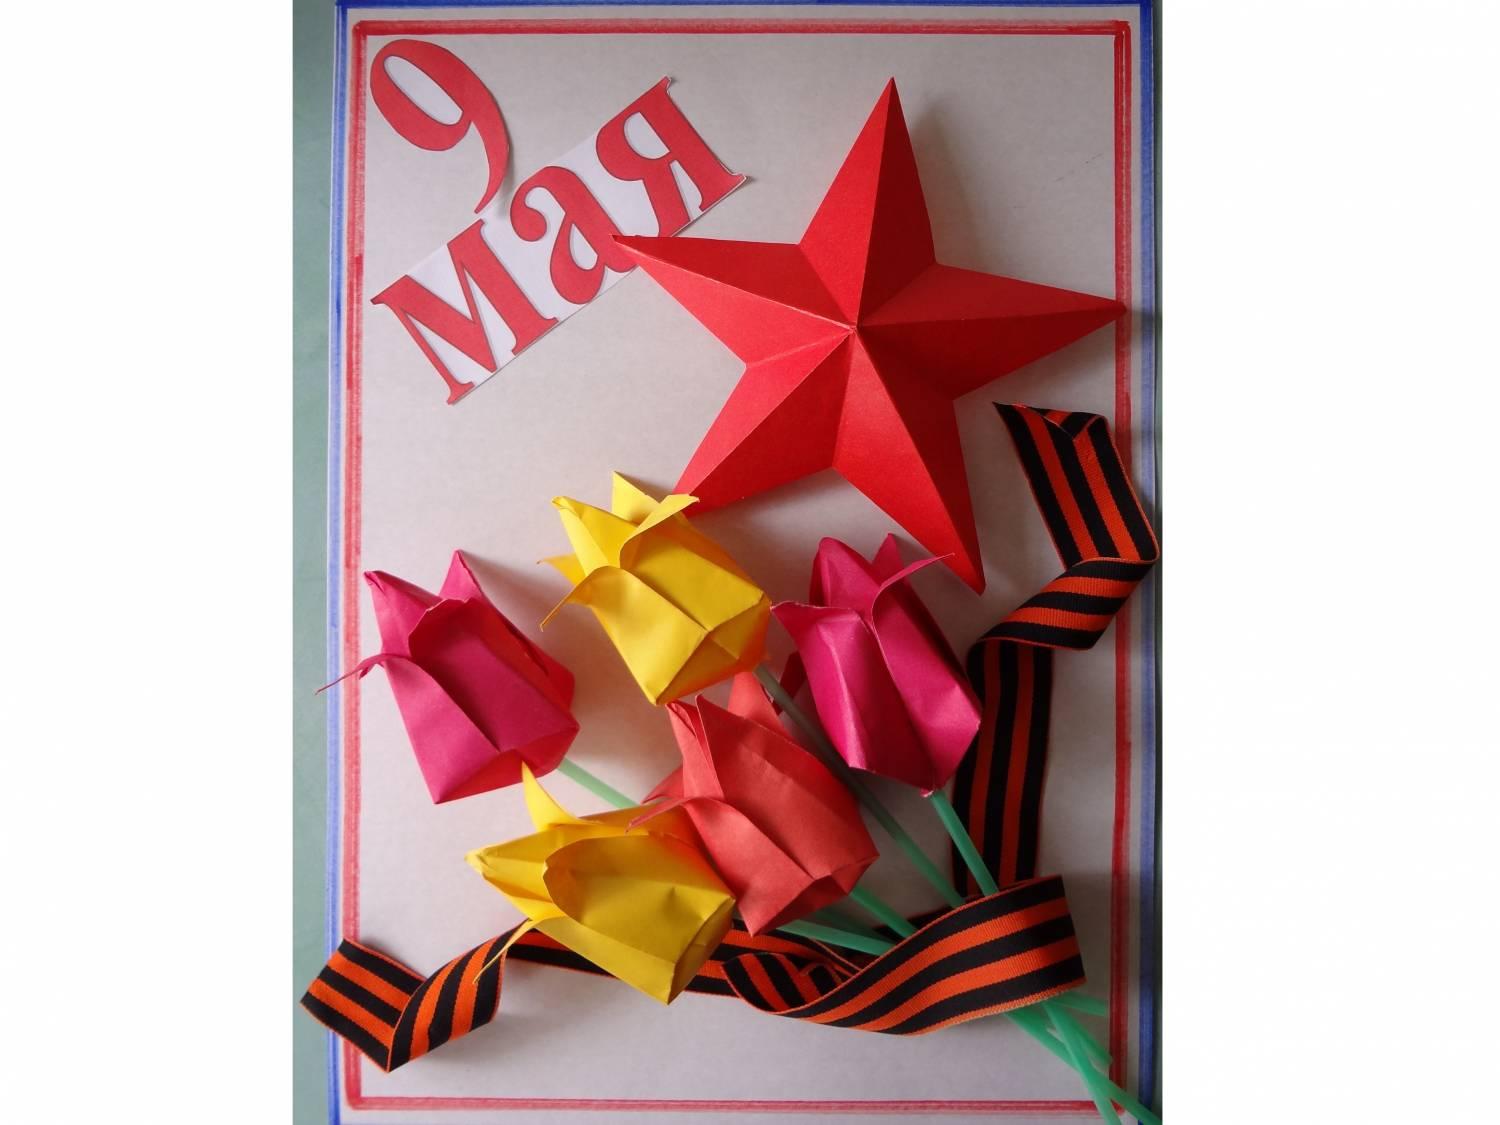 Поделки своими руками 9 мая день победы. Тюльпаны оригами открытка со звездой и георгиевской лентой Сайт поделок